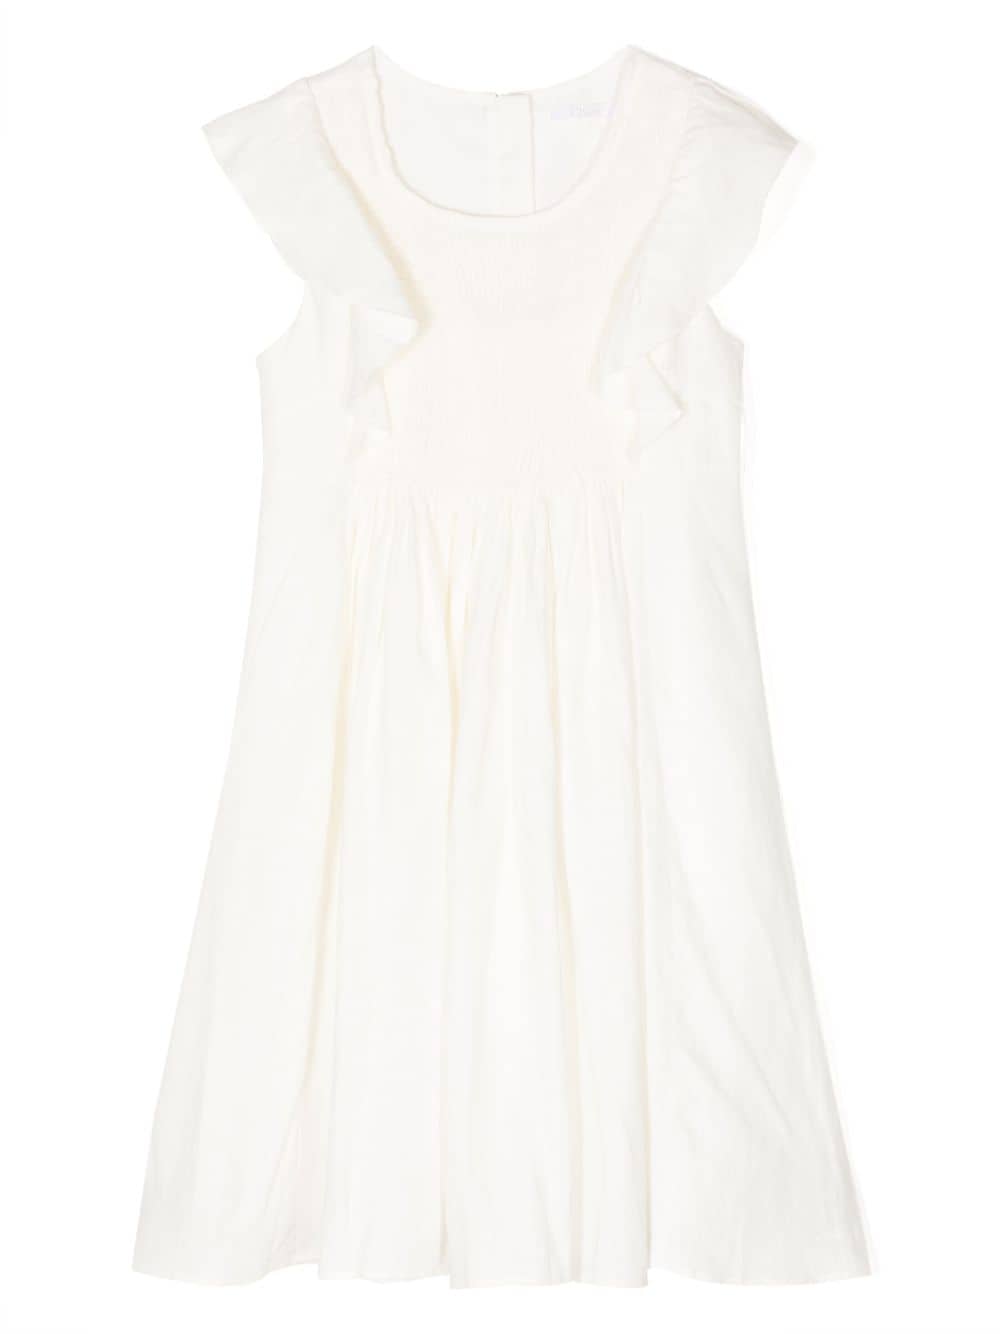 Chloé Teen Girls Ivory Smocked Linen Dress